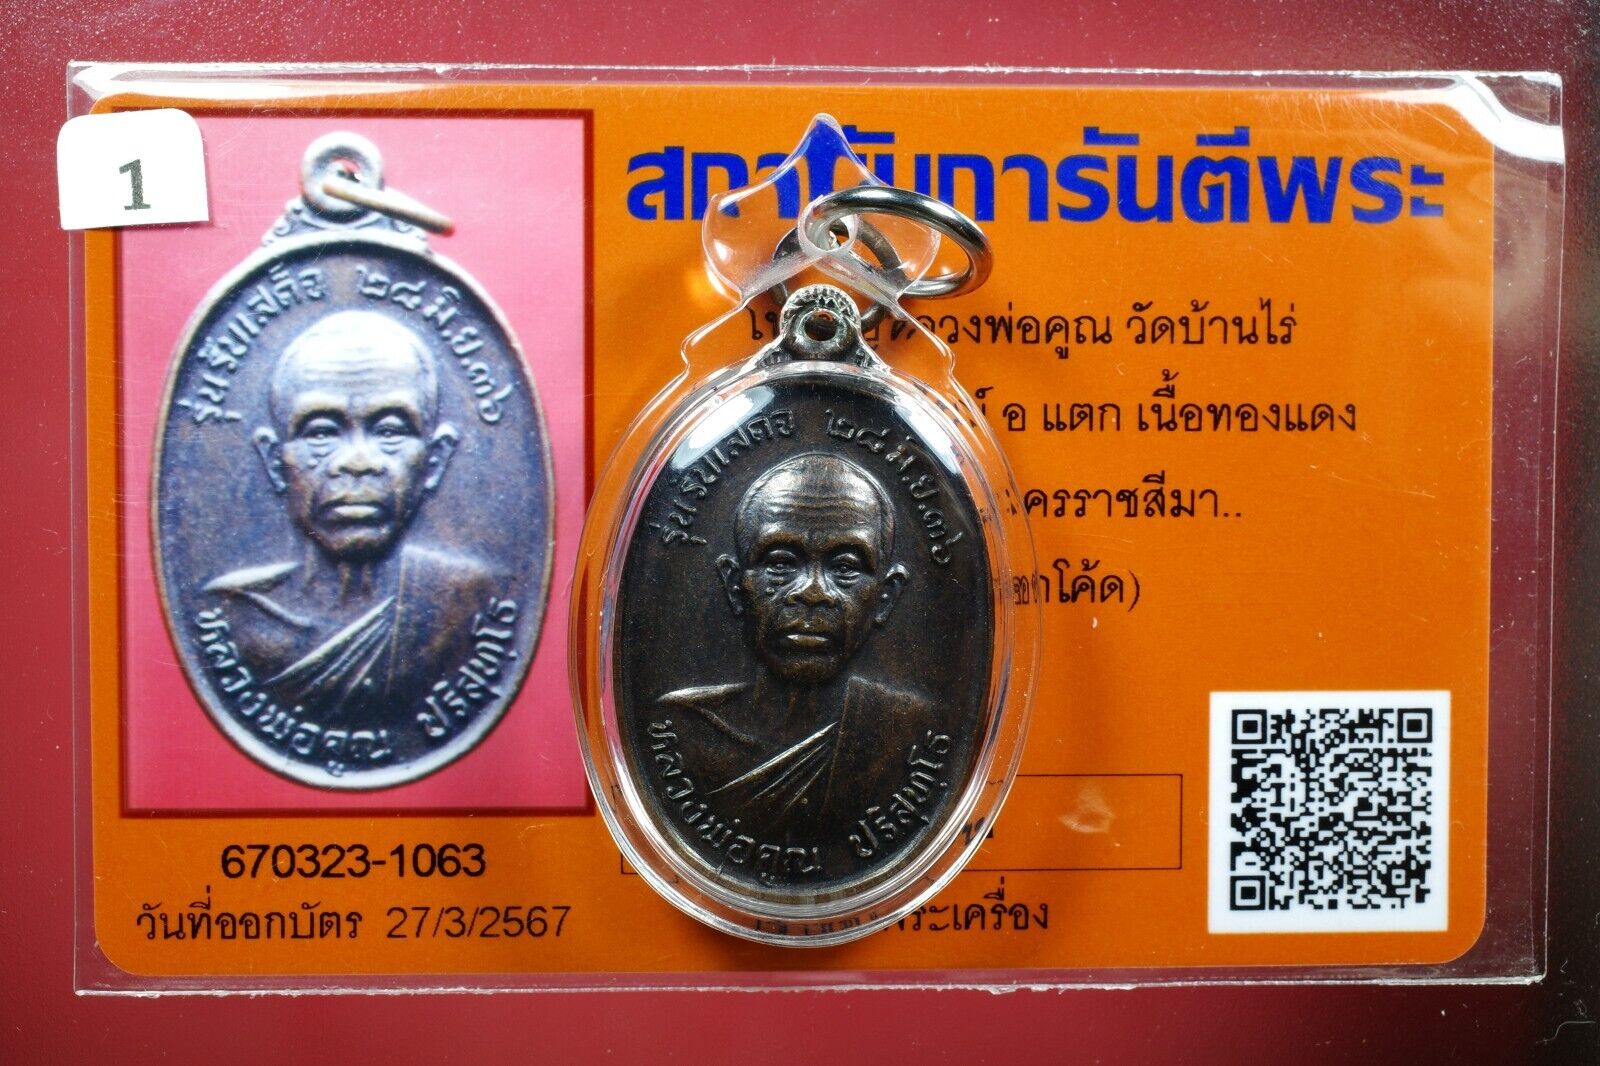 Rian Lp Koon Wat Banrai,Roon RapSadet, NurThongDeang with Code,Thai amulet&Card